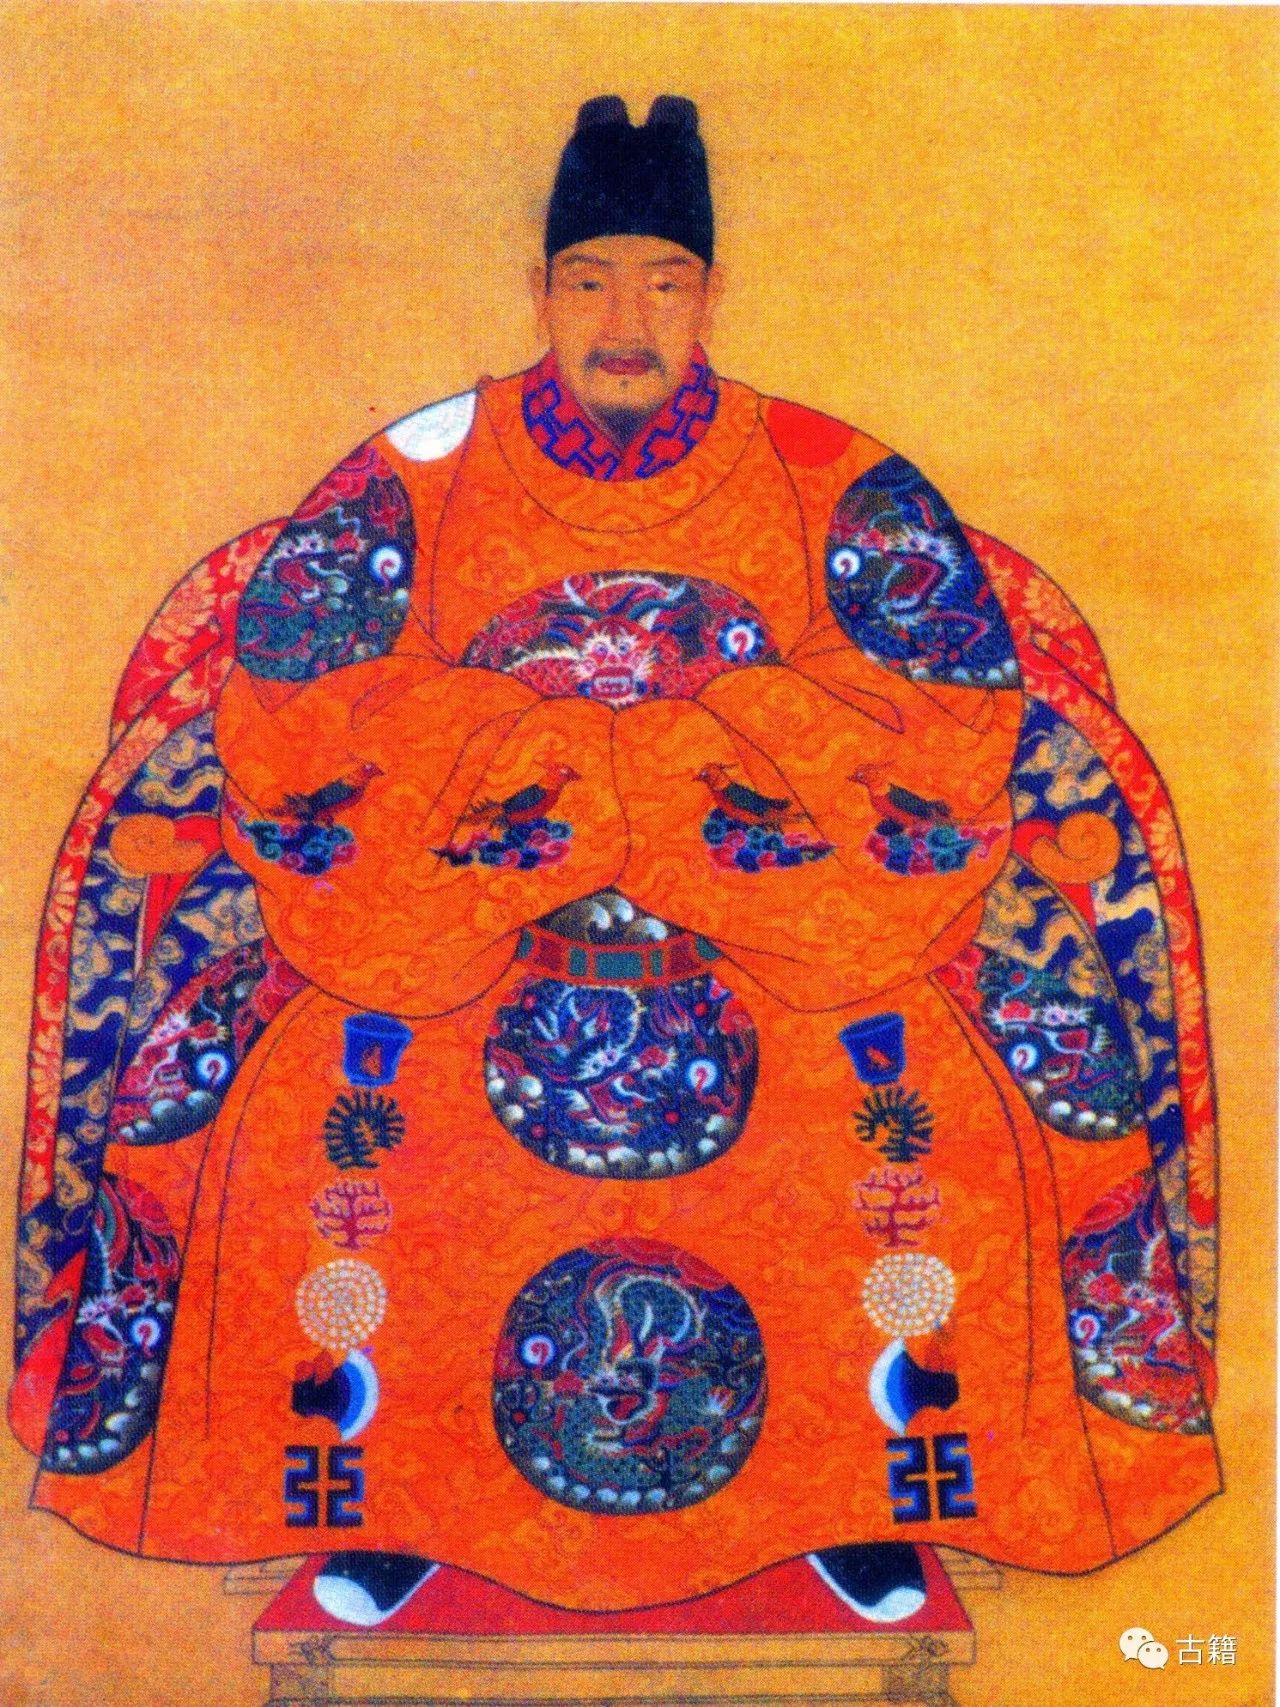 明朝和清朝历代皇帝画像,谁最有帝王之相?图片